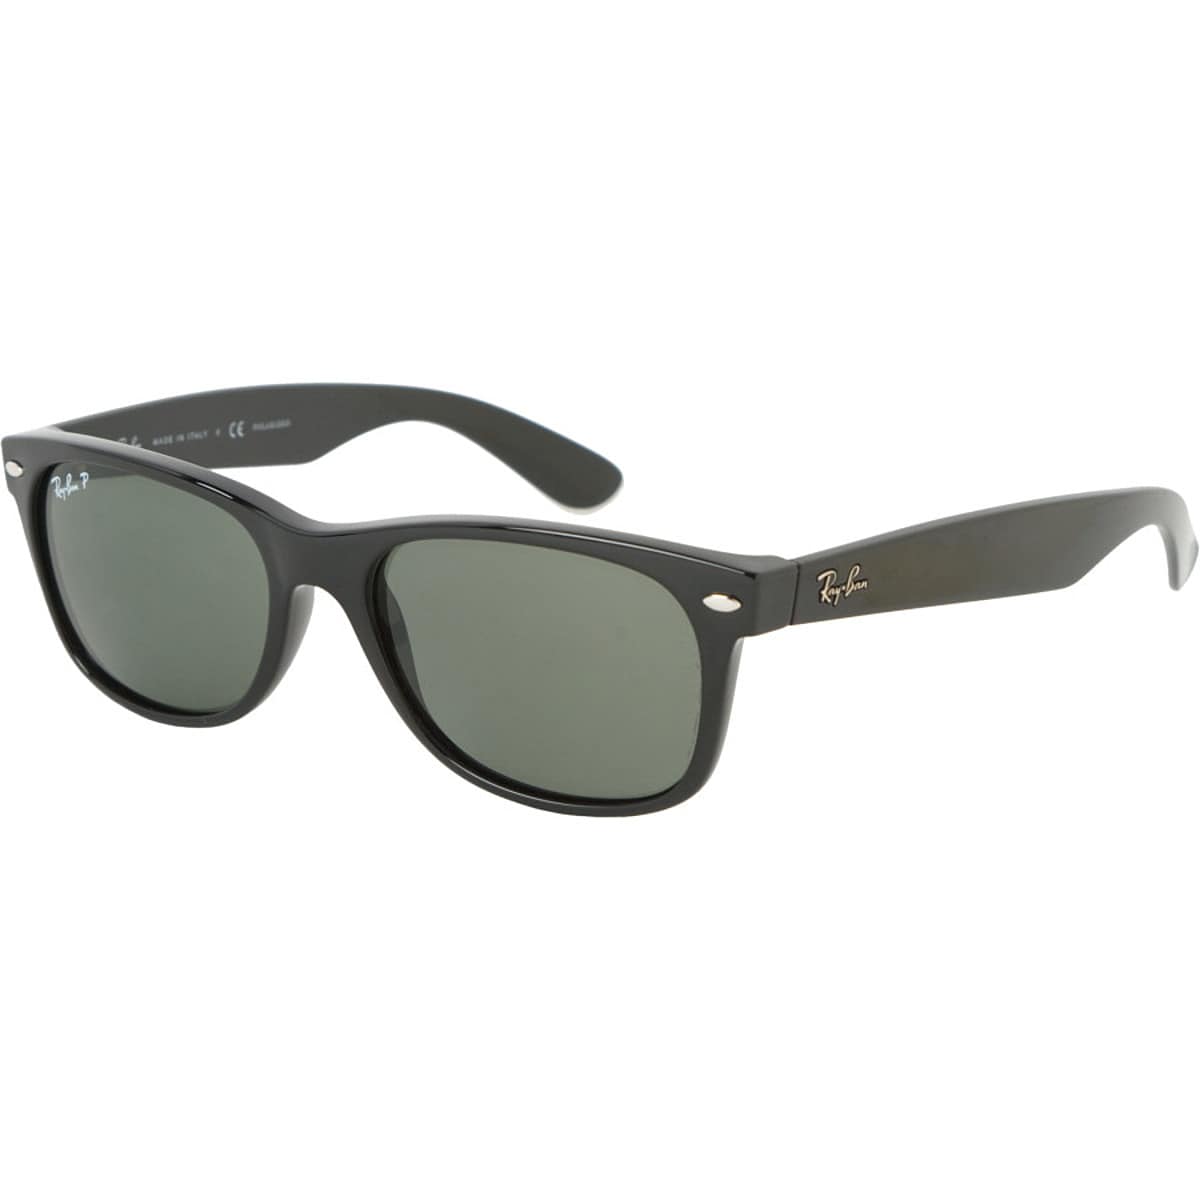 Новые поляризованные солнцезащитные очки wayfarer Ray-Ban, цвет black/crystal natural green солнцезащитные очки ray ban 4195 6017 88 wayfarer liteforce